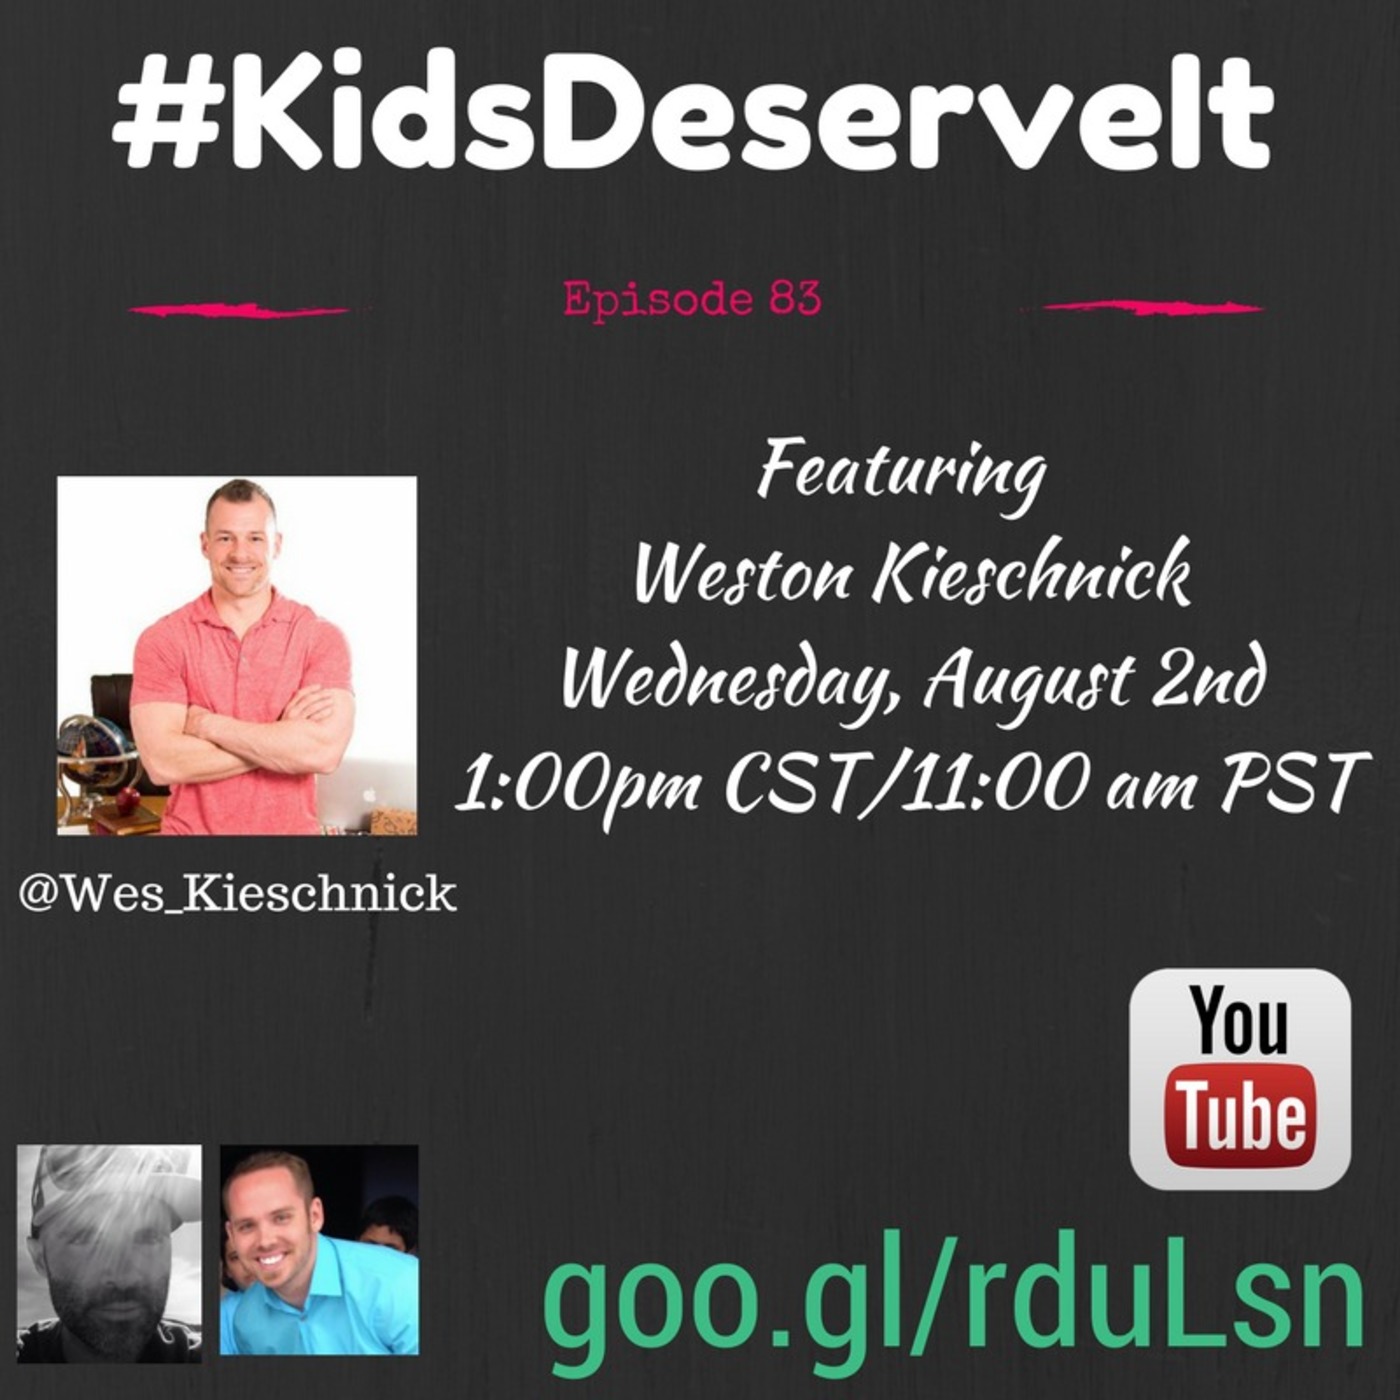 Episode 83 of #KidsDeserveIt with Wes Kieschnick